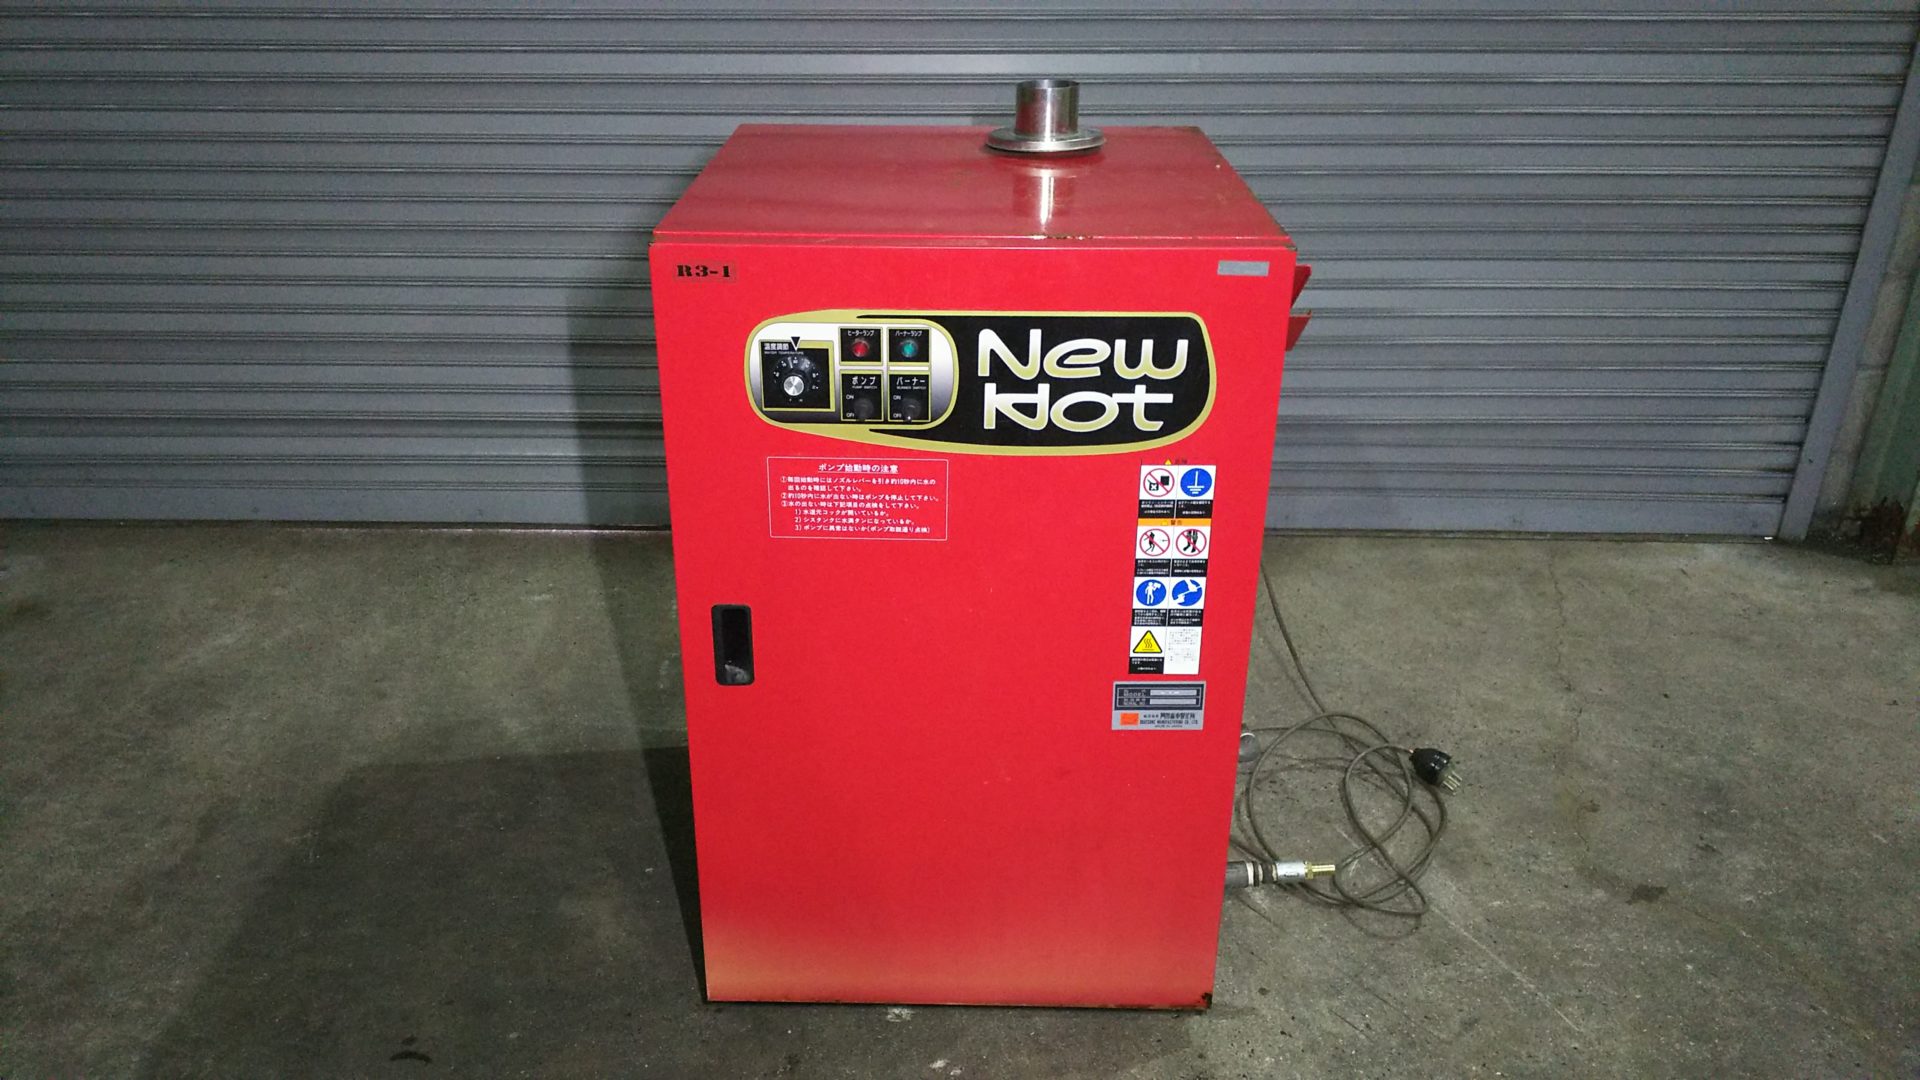 中古 高圧温水洗車機 岡常 NEWHOT R3-1 | 自動車整備・鈑金機器の買取 